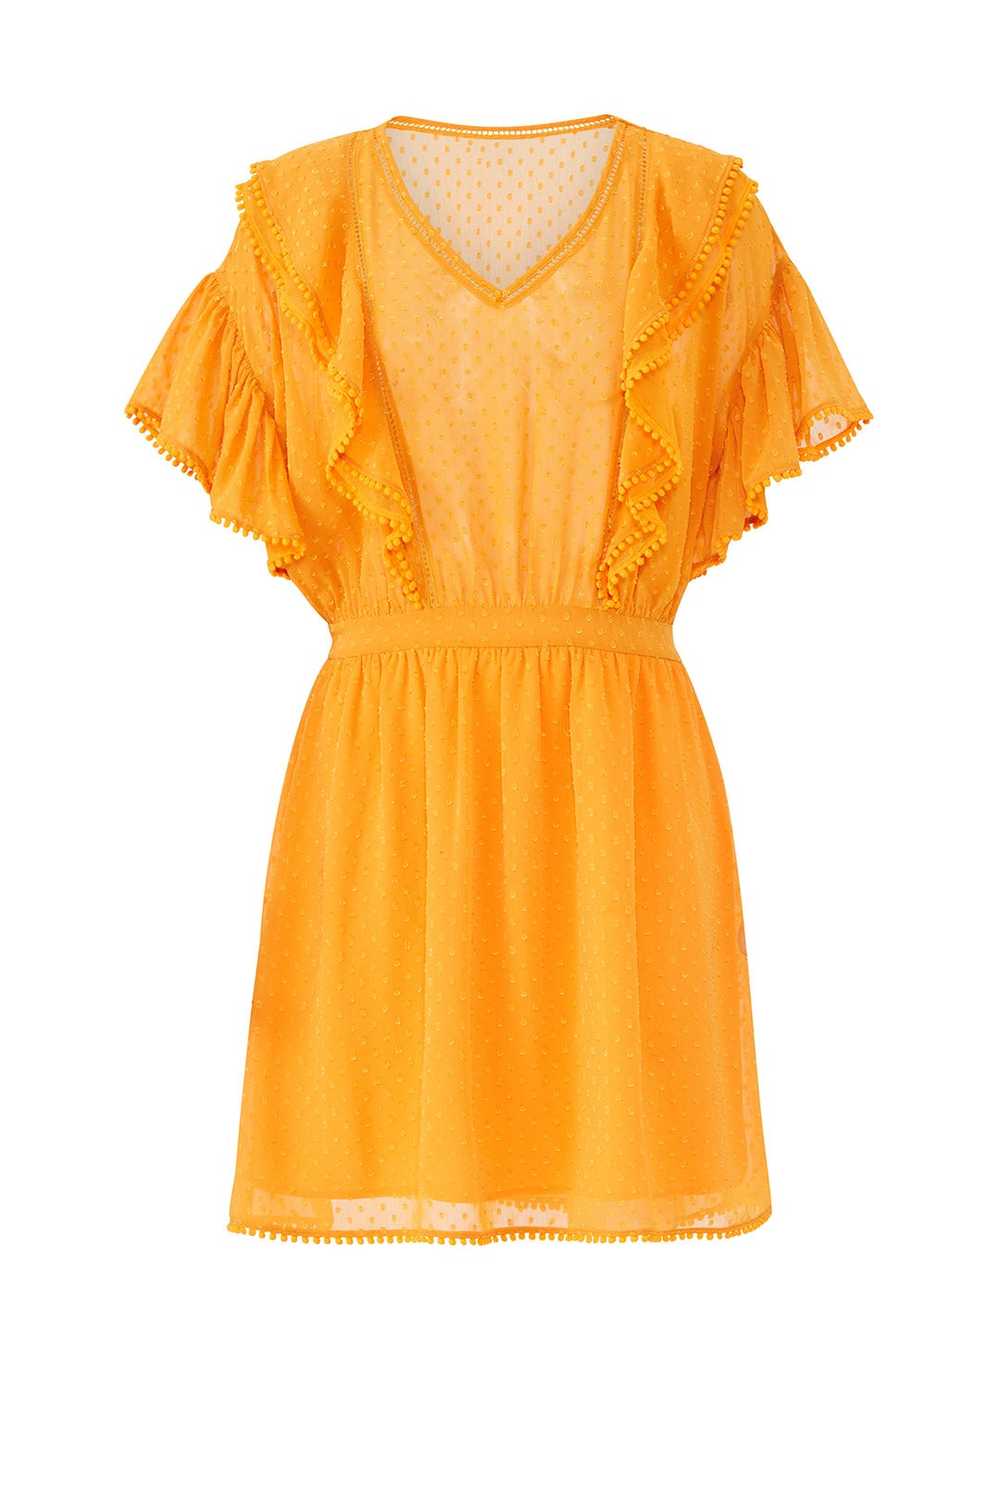 Scotch & Soda Yellow Ruffle Lace Dress - image 4